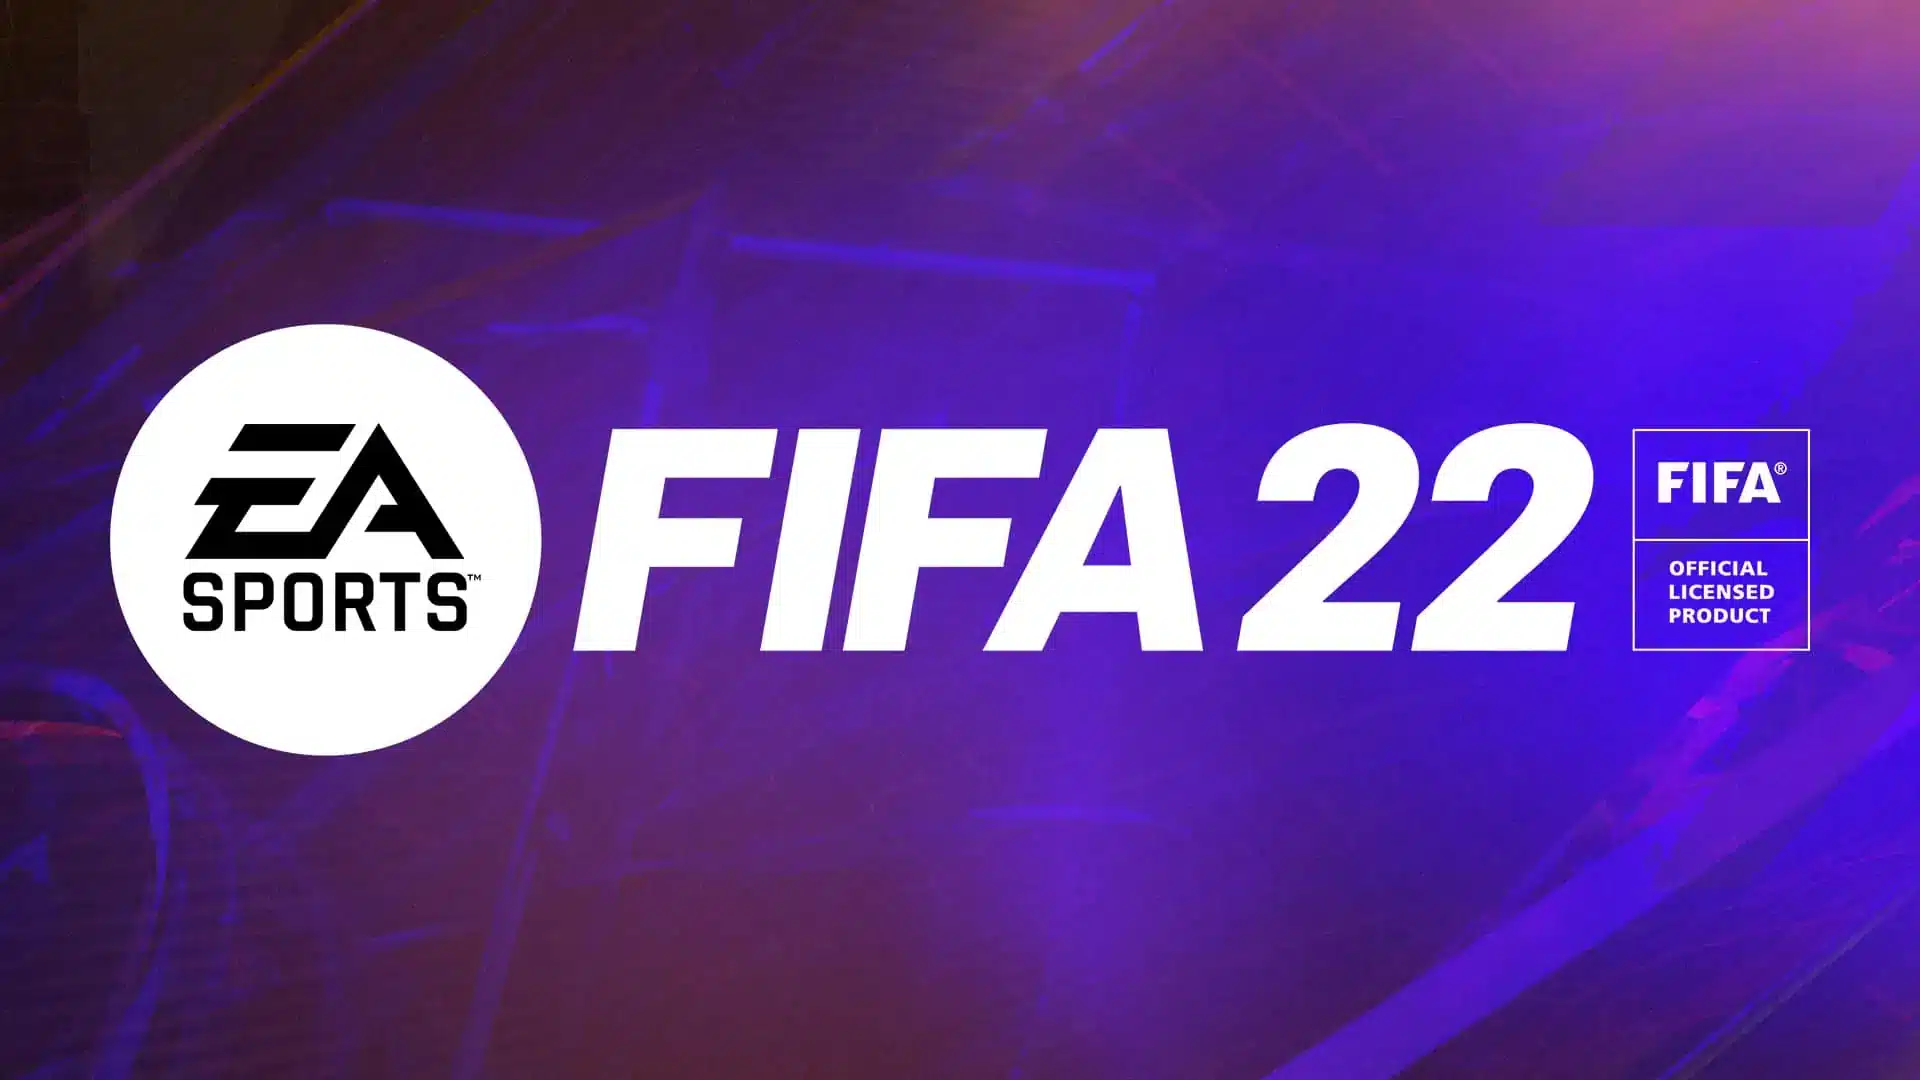 Muitos jogadores do EA Sports FIFA 22 tiveram suas contas invadidas